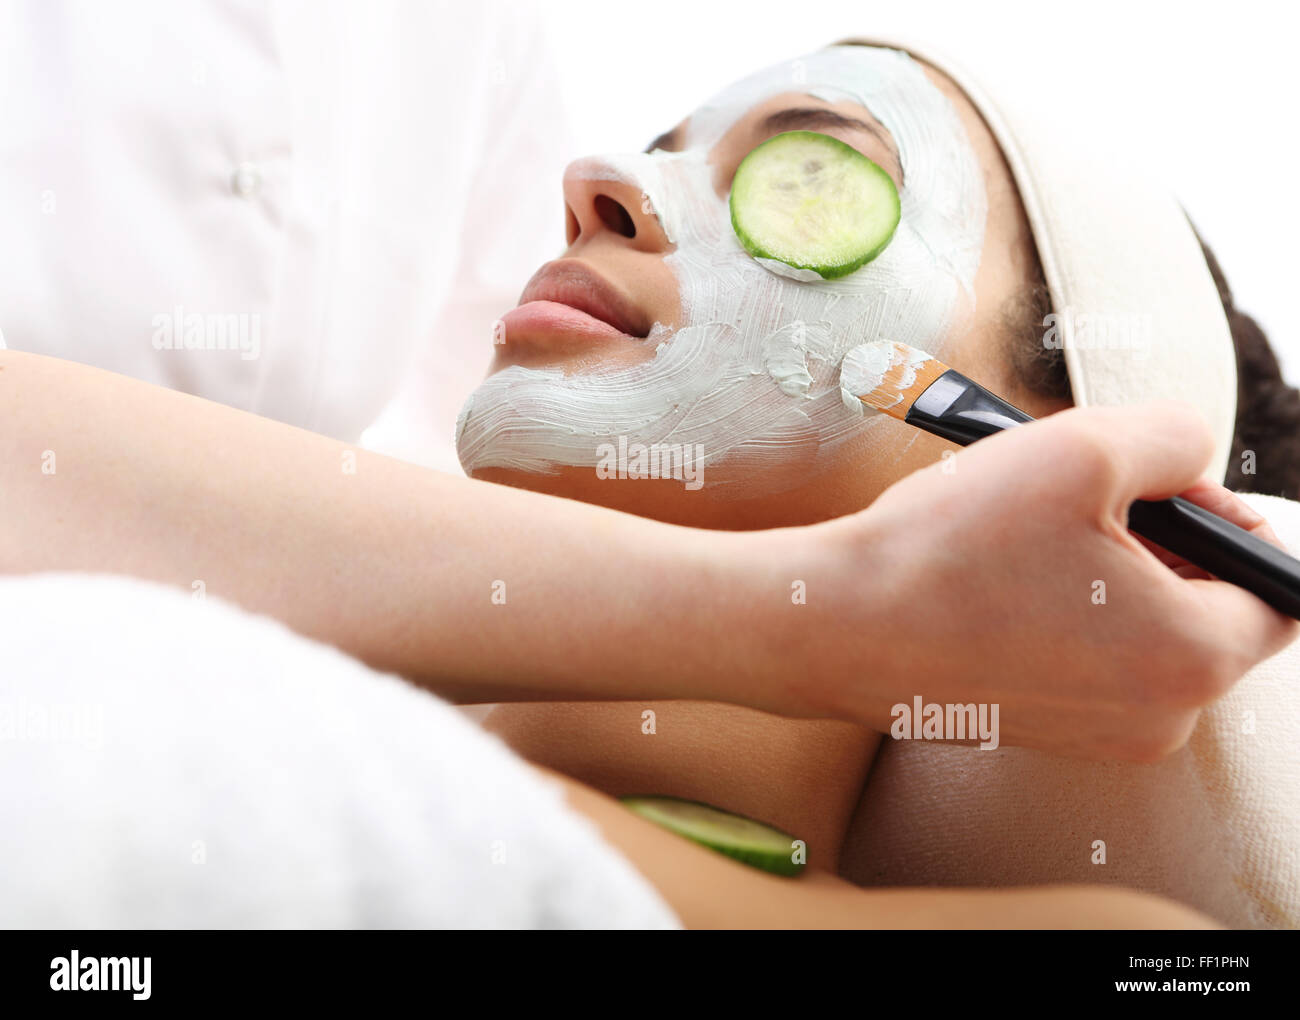 Masque hydratant cosmétique est appliquée sur le visage d'une femme.. Masque nettoyant, masque avec l'argile verte, vous détendre dans le spa Banque D'Images